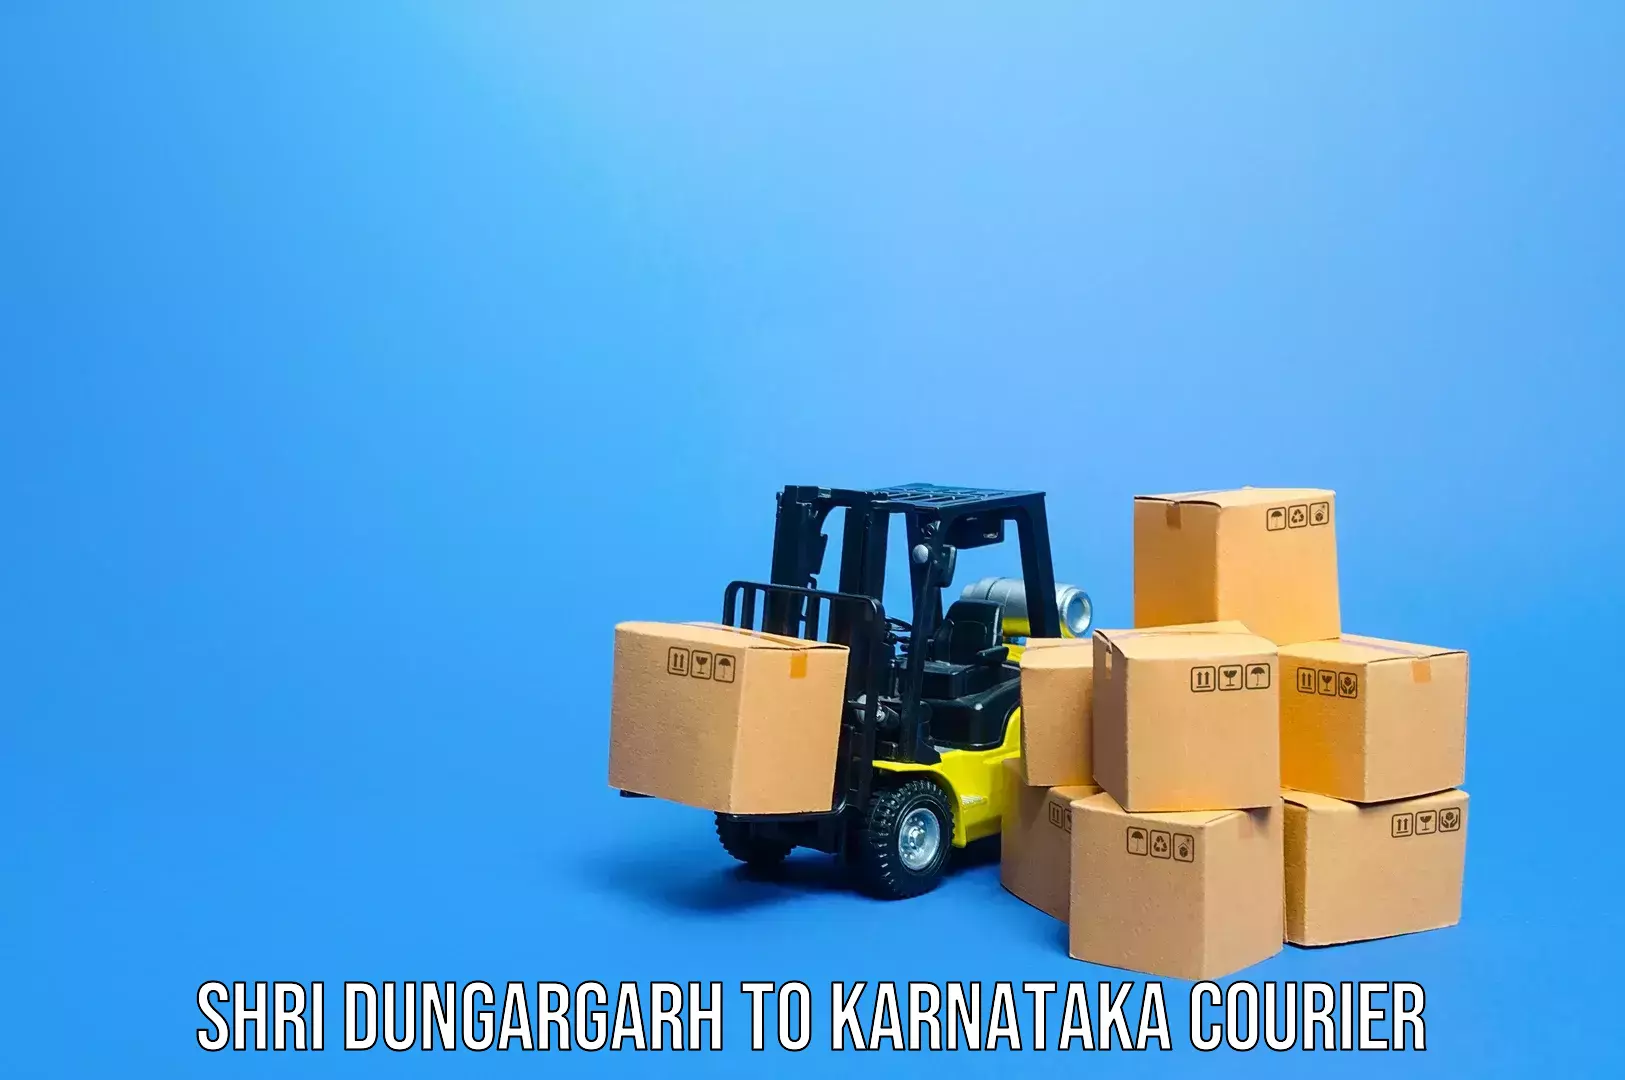 Baggage transport scheduler in Shri Dungargarh to Karnataka